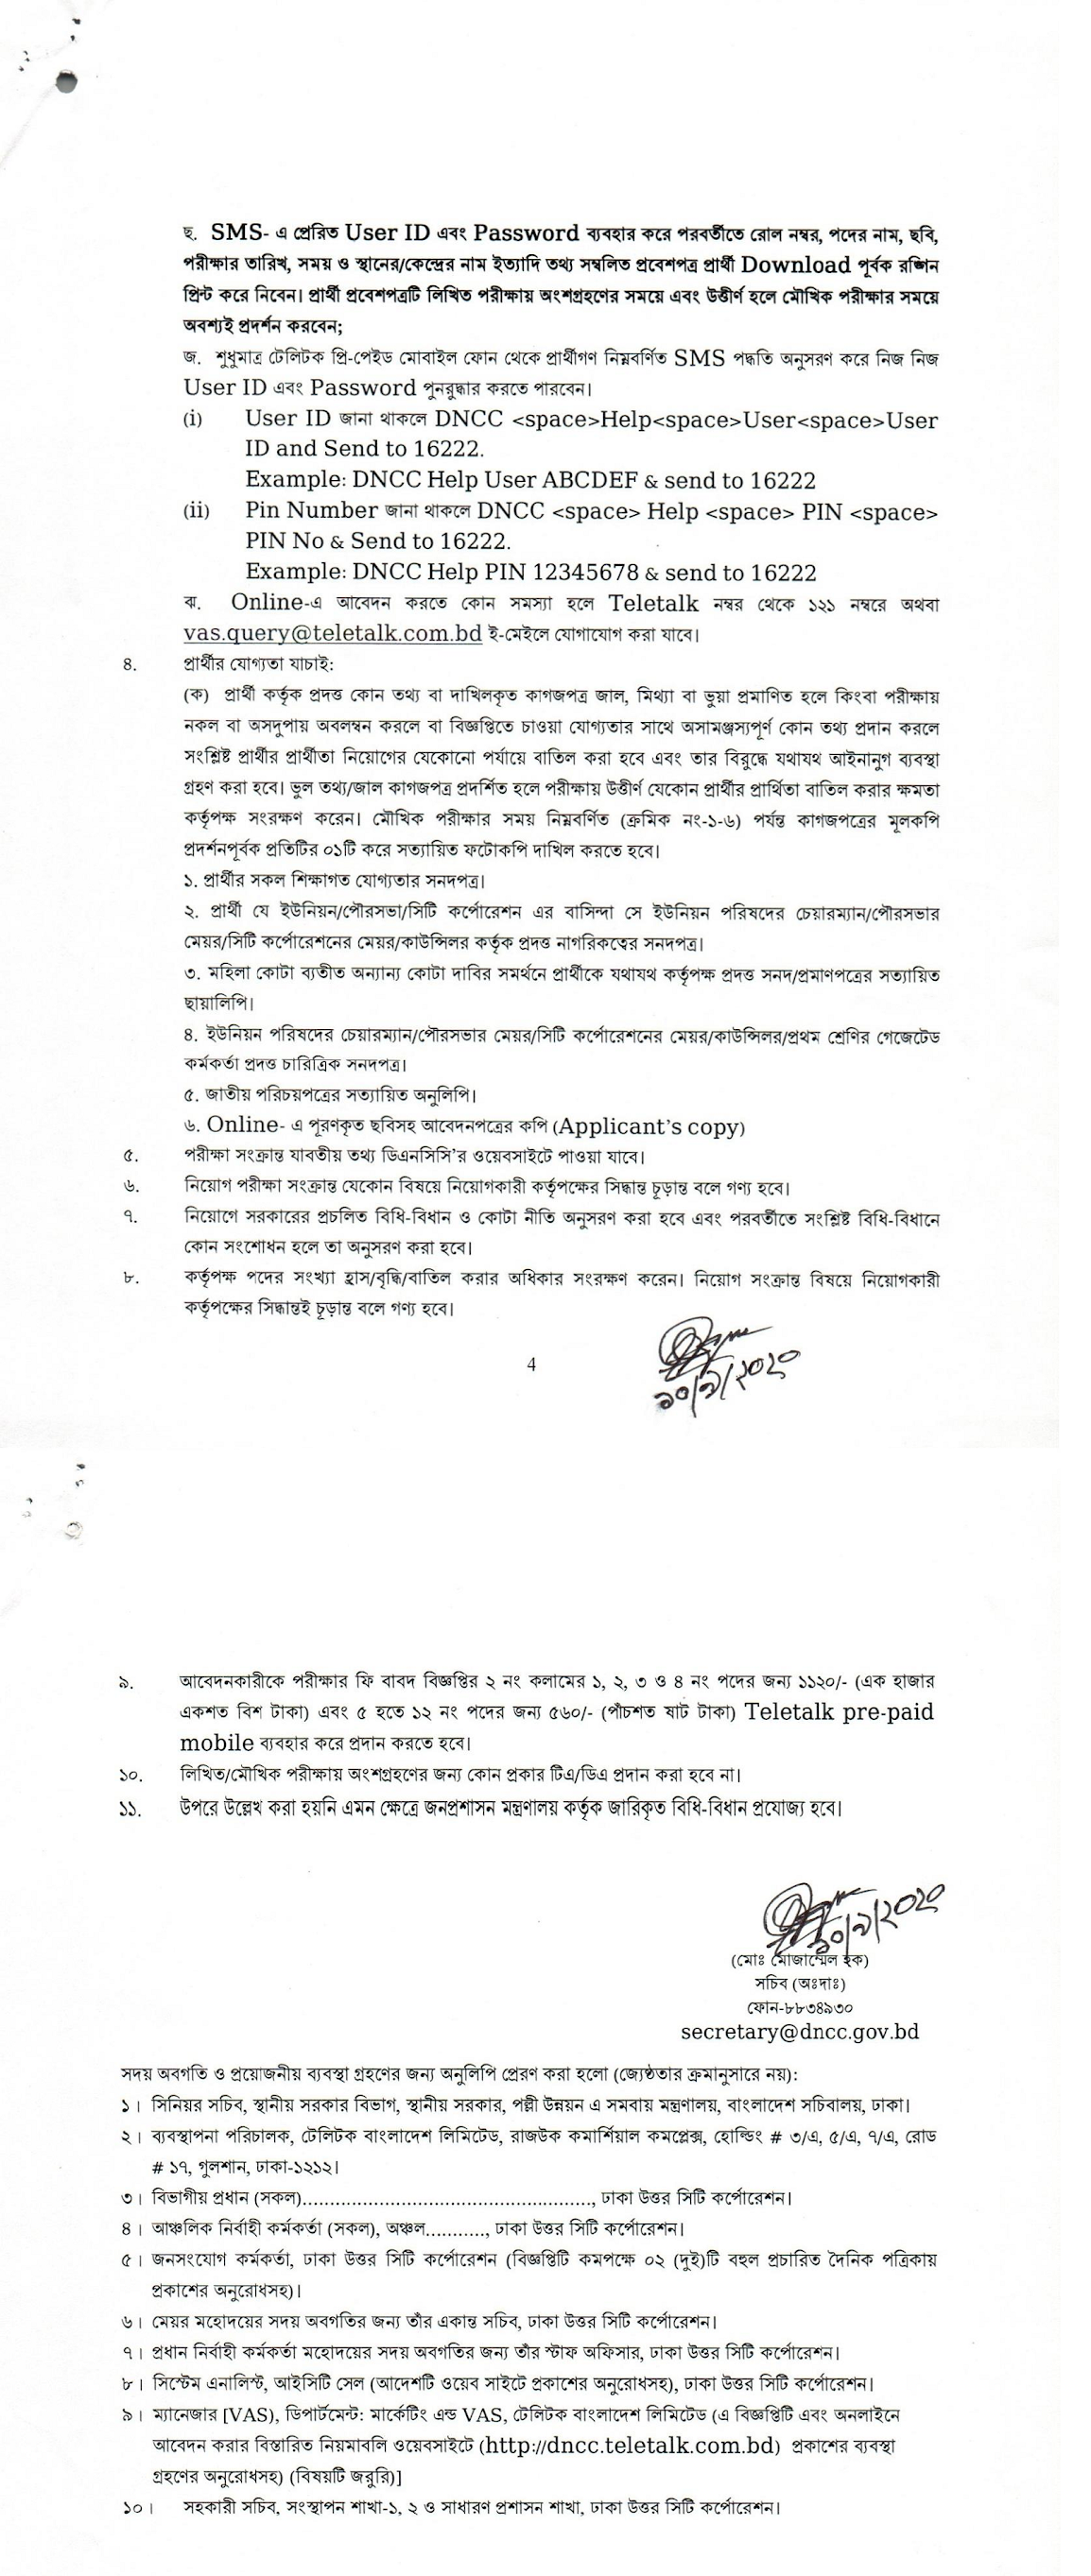 dncc.teletalk.com.bd ৫৩ পদে ঢাকা উত্তর সিটি কর্পরেশনে (DNCC) এ নিয়োগ বিজ্ঞপ্তি (সংশোধিত)